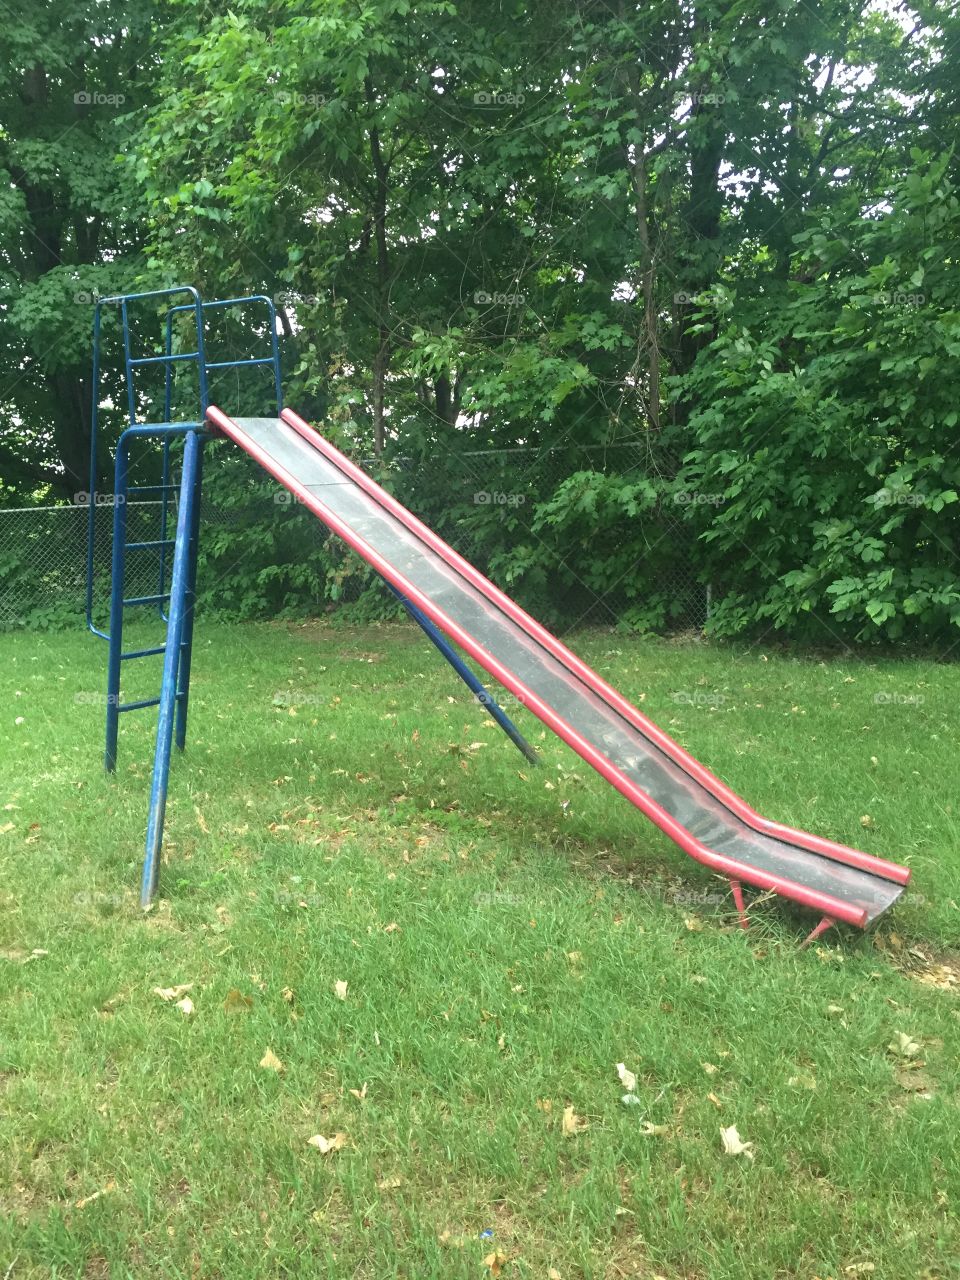 Metal slide in a park